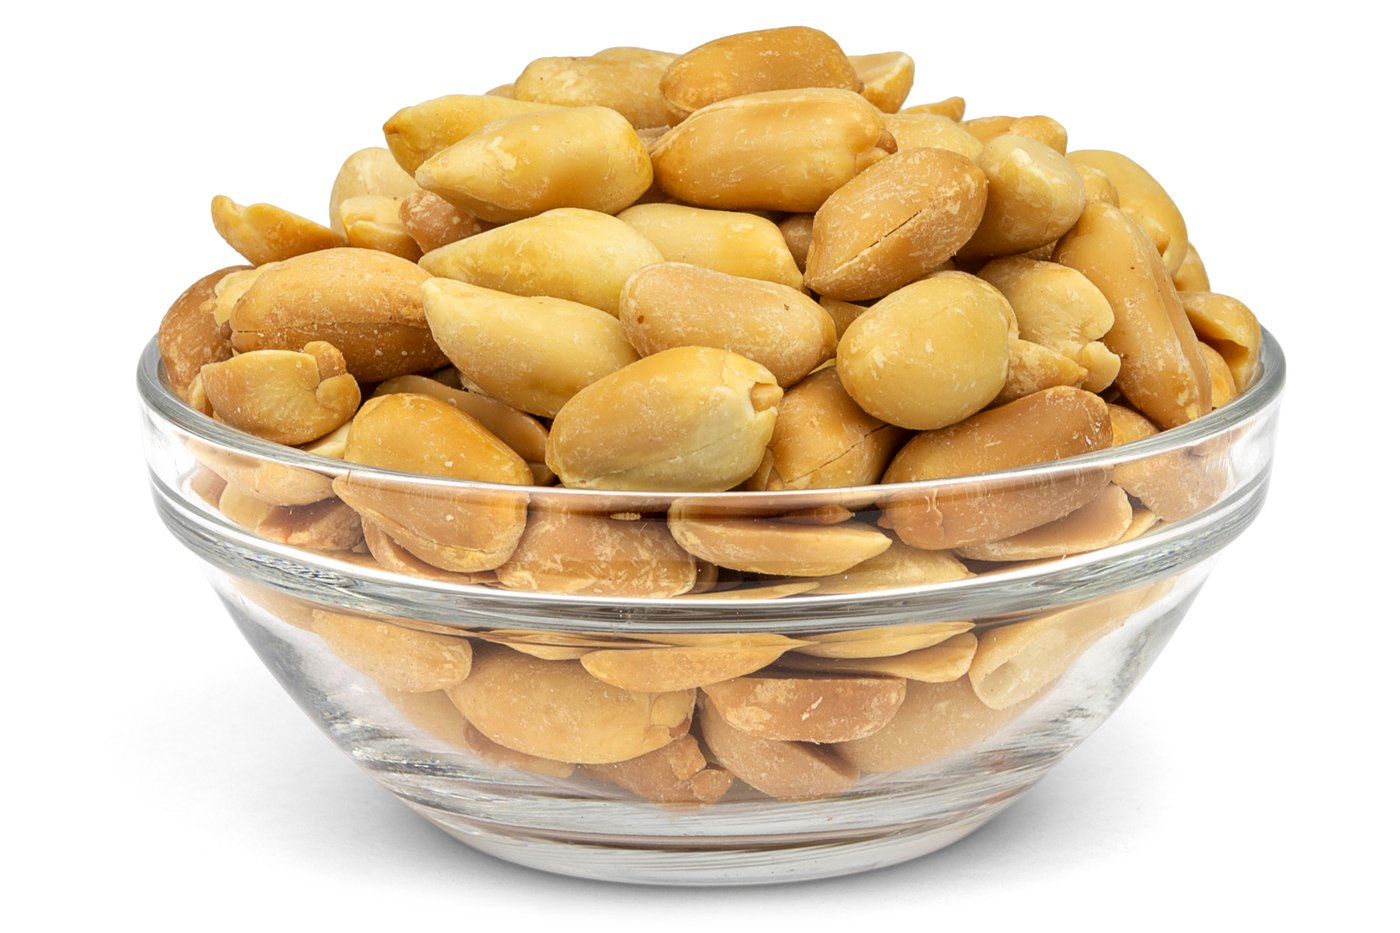 Dry Roasted Peanuts (Unsalted) image zoom